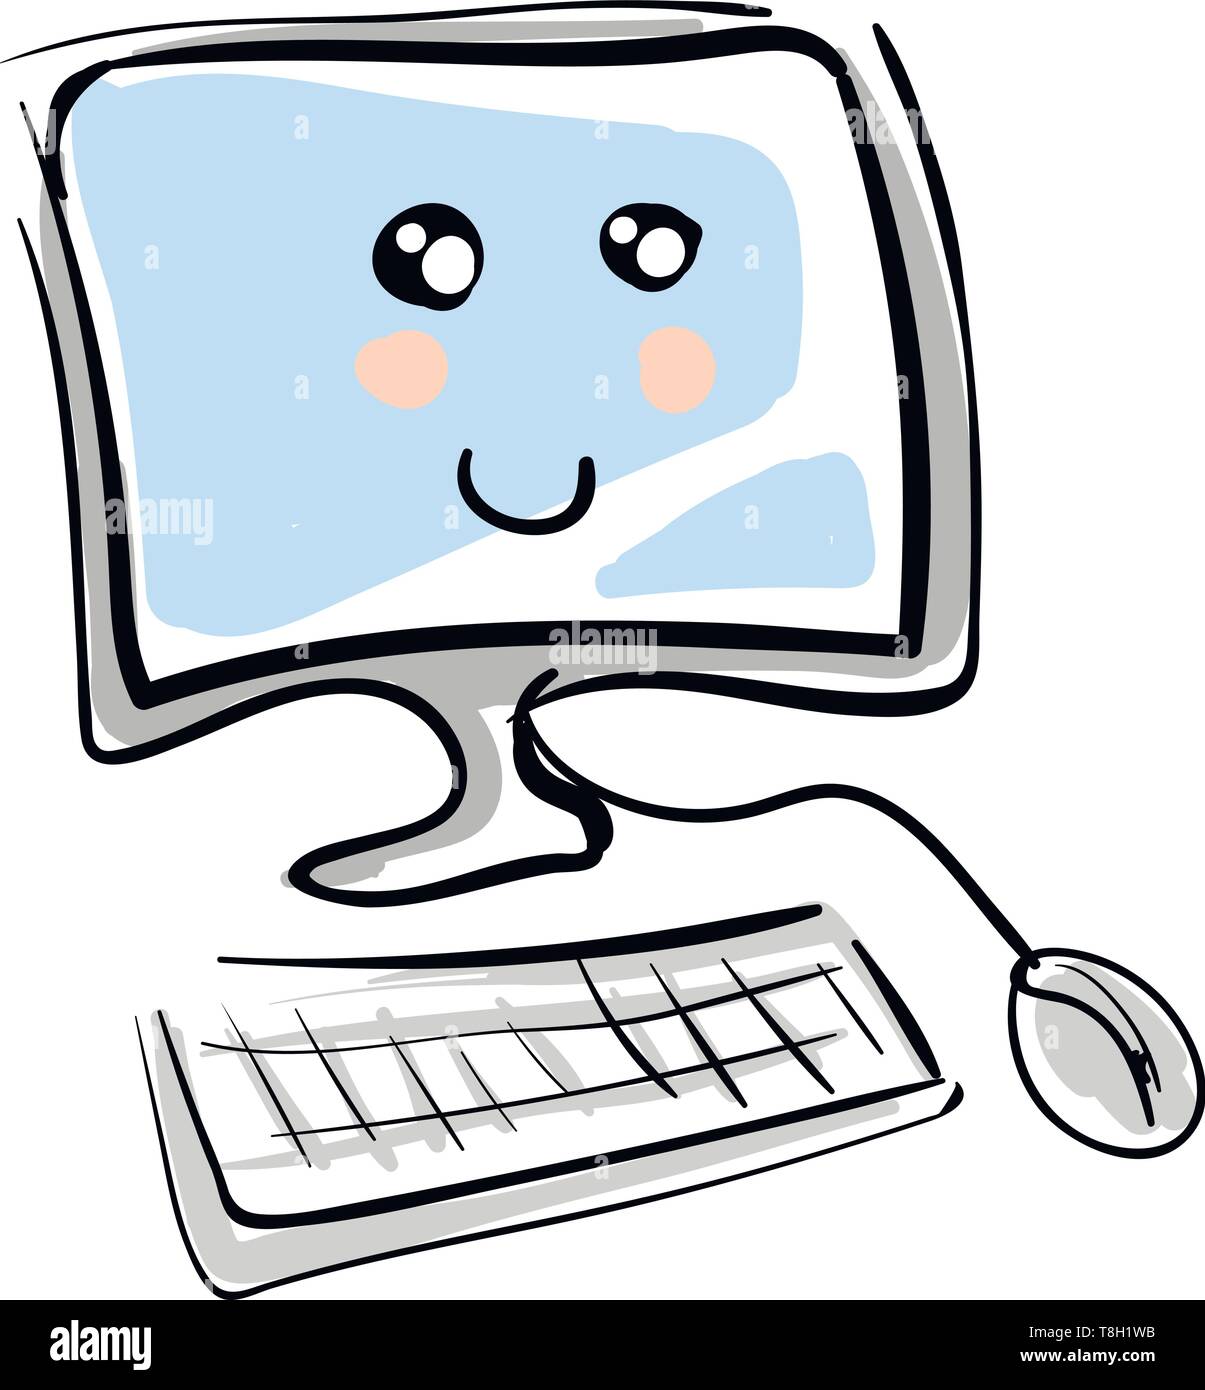 Computer mit Gesicht Charakter Hand gezeichnet Design, Illustration, Vektor  auf weißem Hintergrund Stock-Vektorgrafik - Alamy